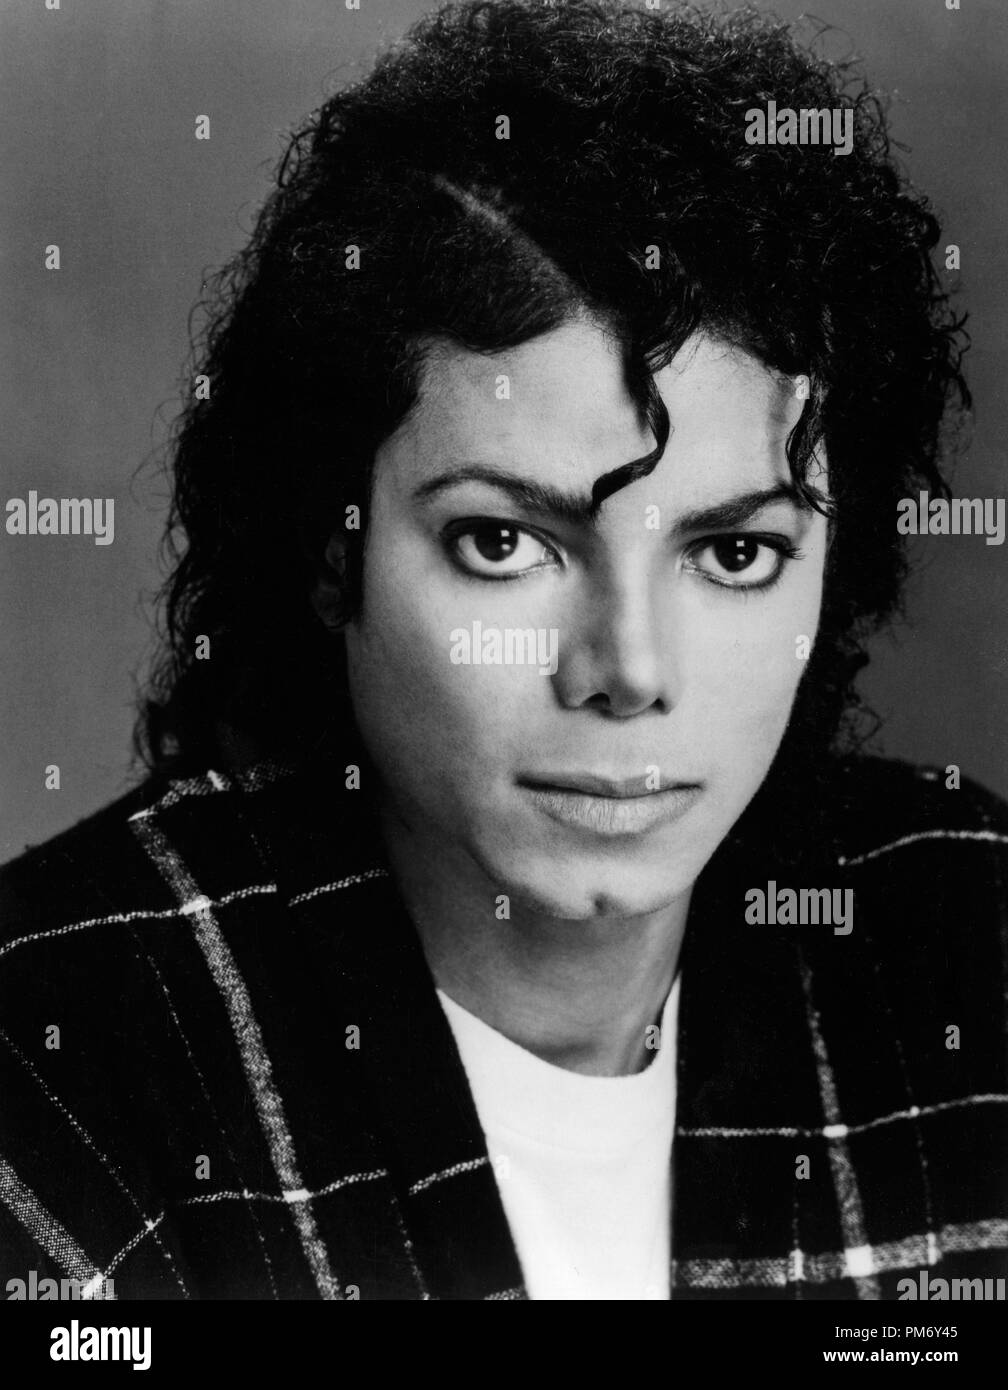 Studio Publicity Still: Michael Jackson   circa 1986   File Reference # 31202 1031THA Stock Photo